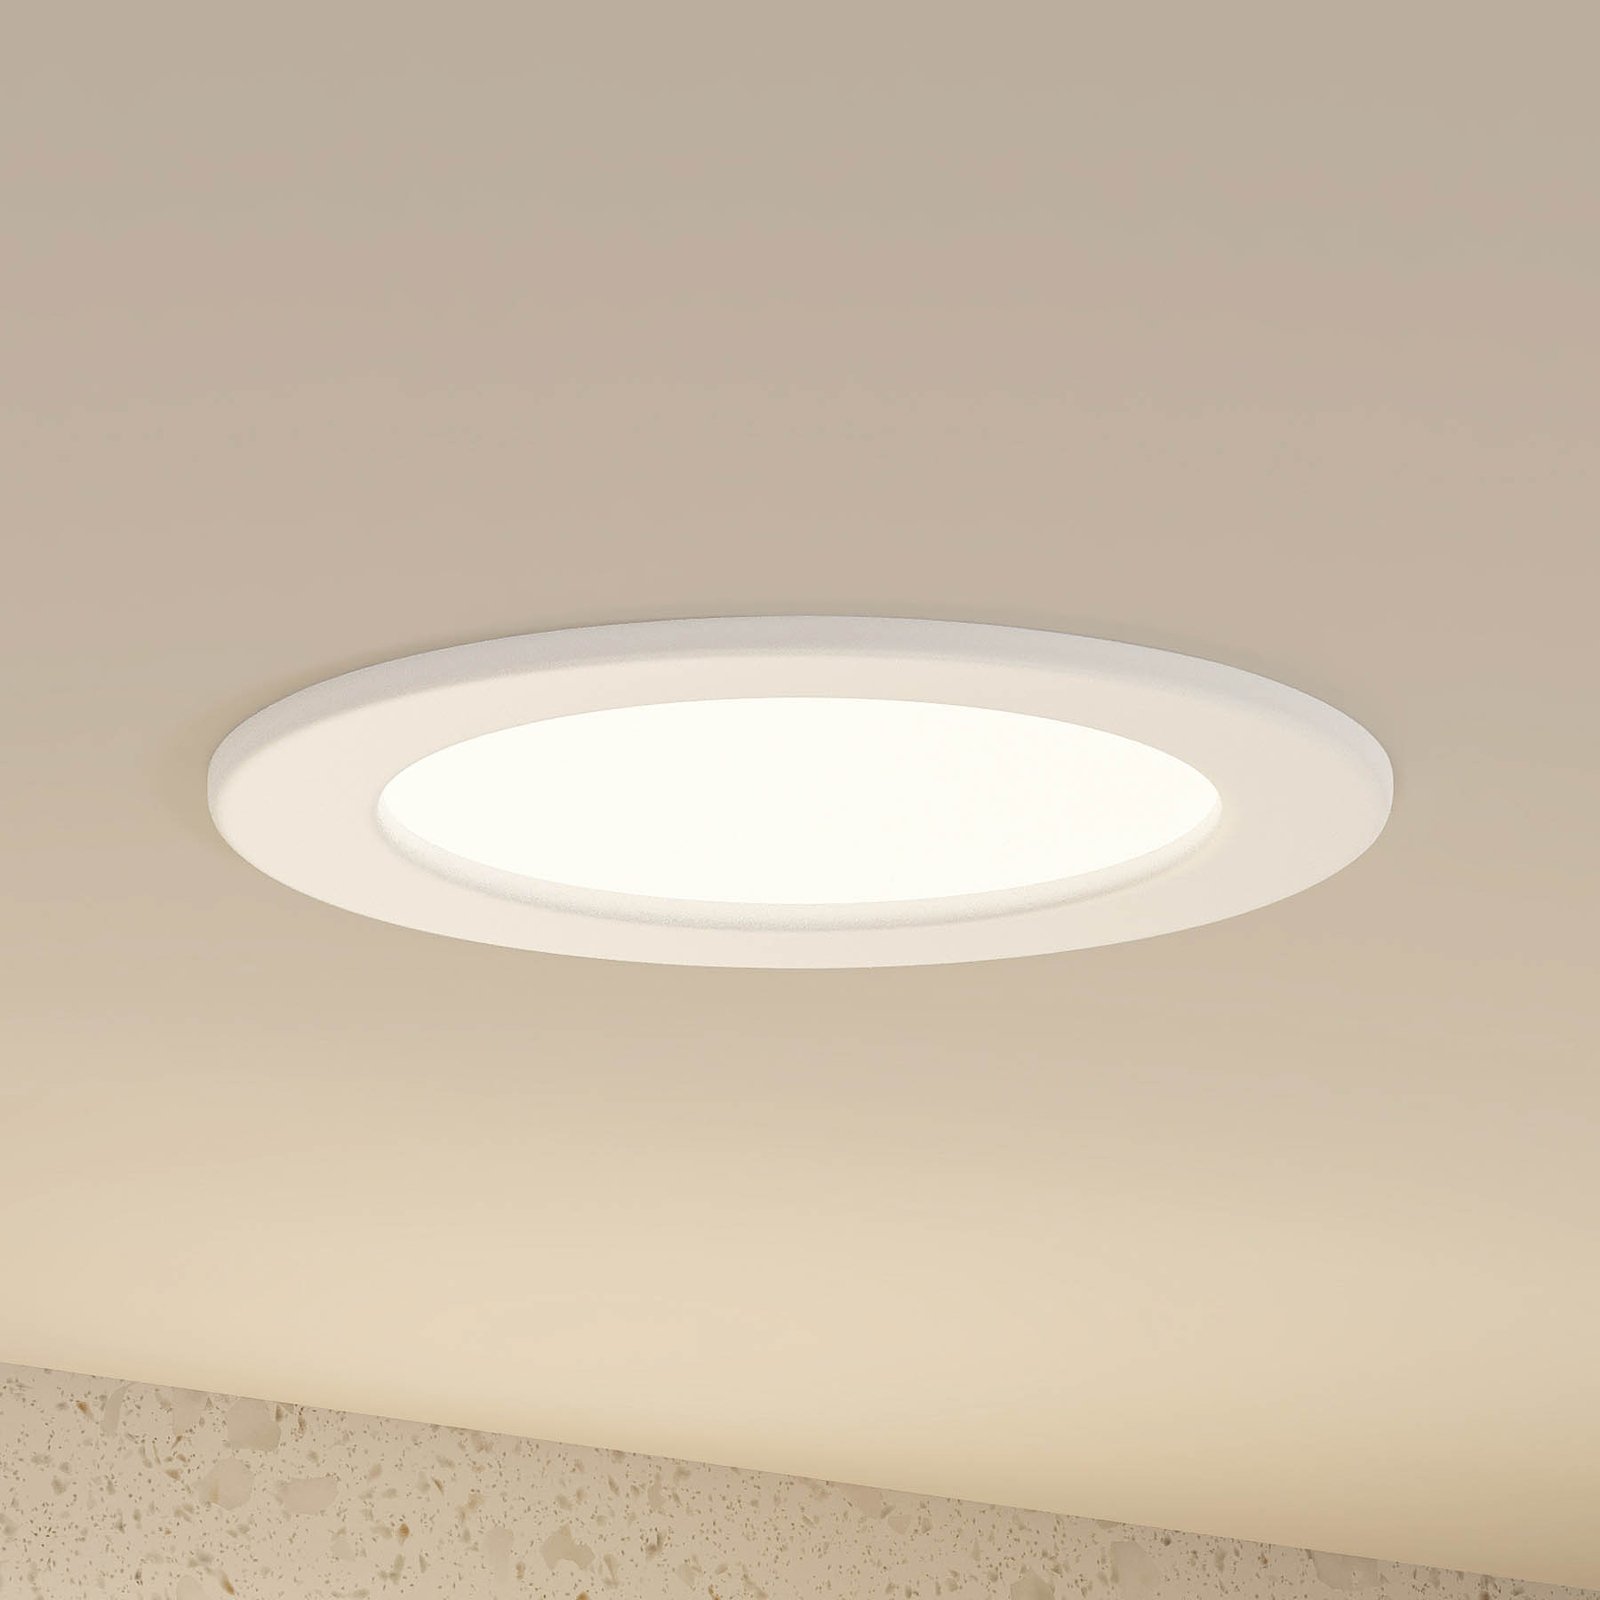 Prios Cadance LED indbygningslampe, hvid, 17 cm